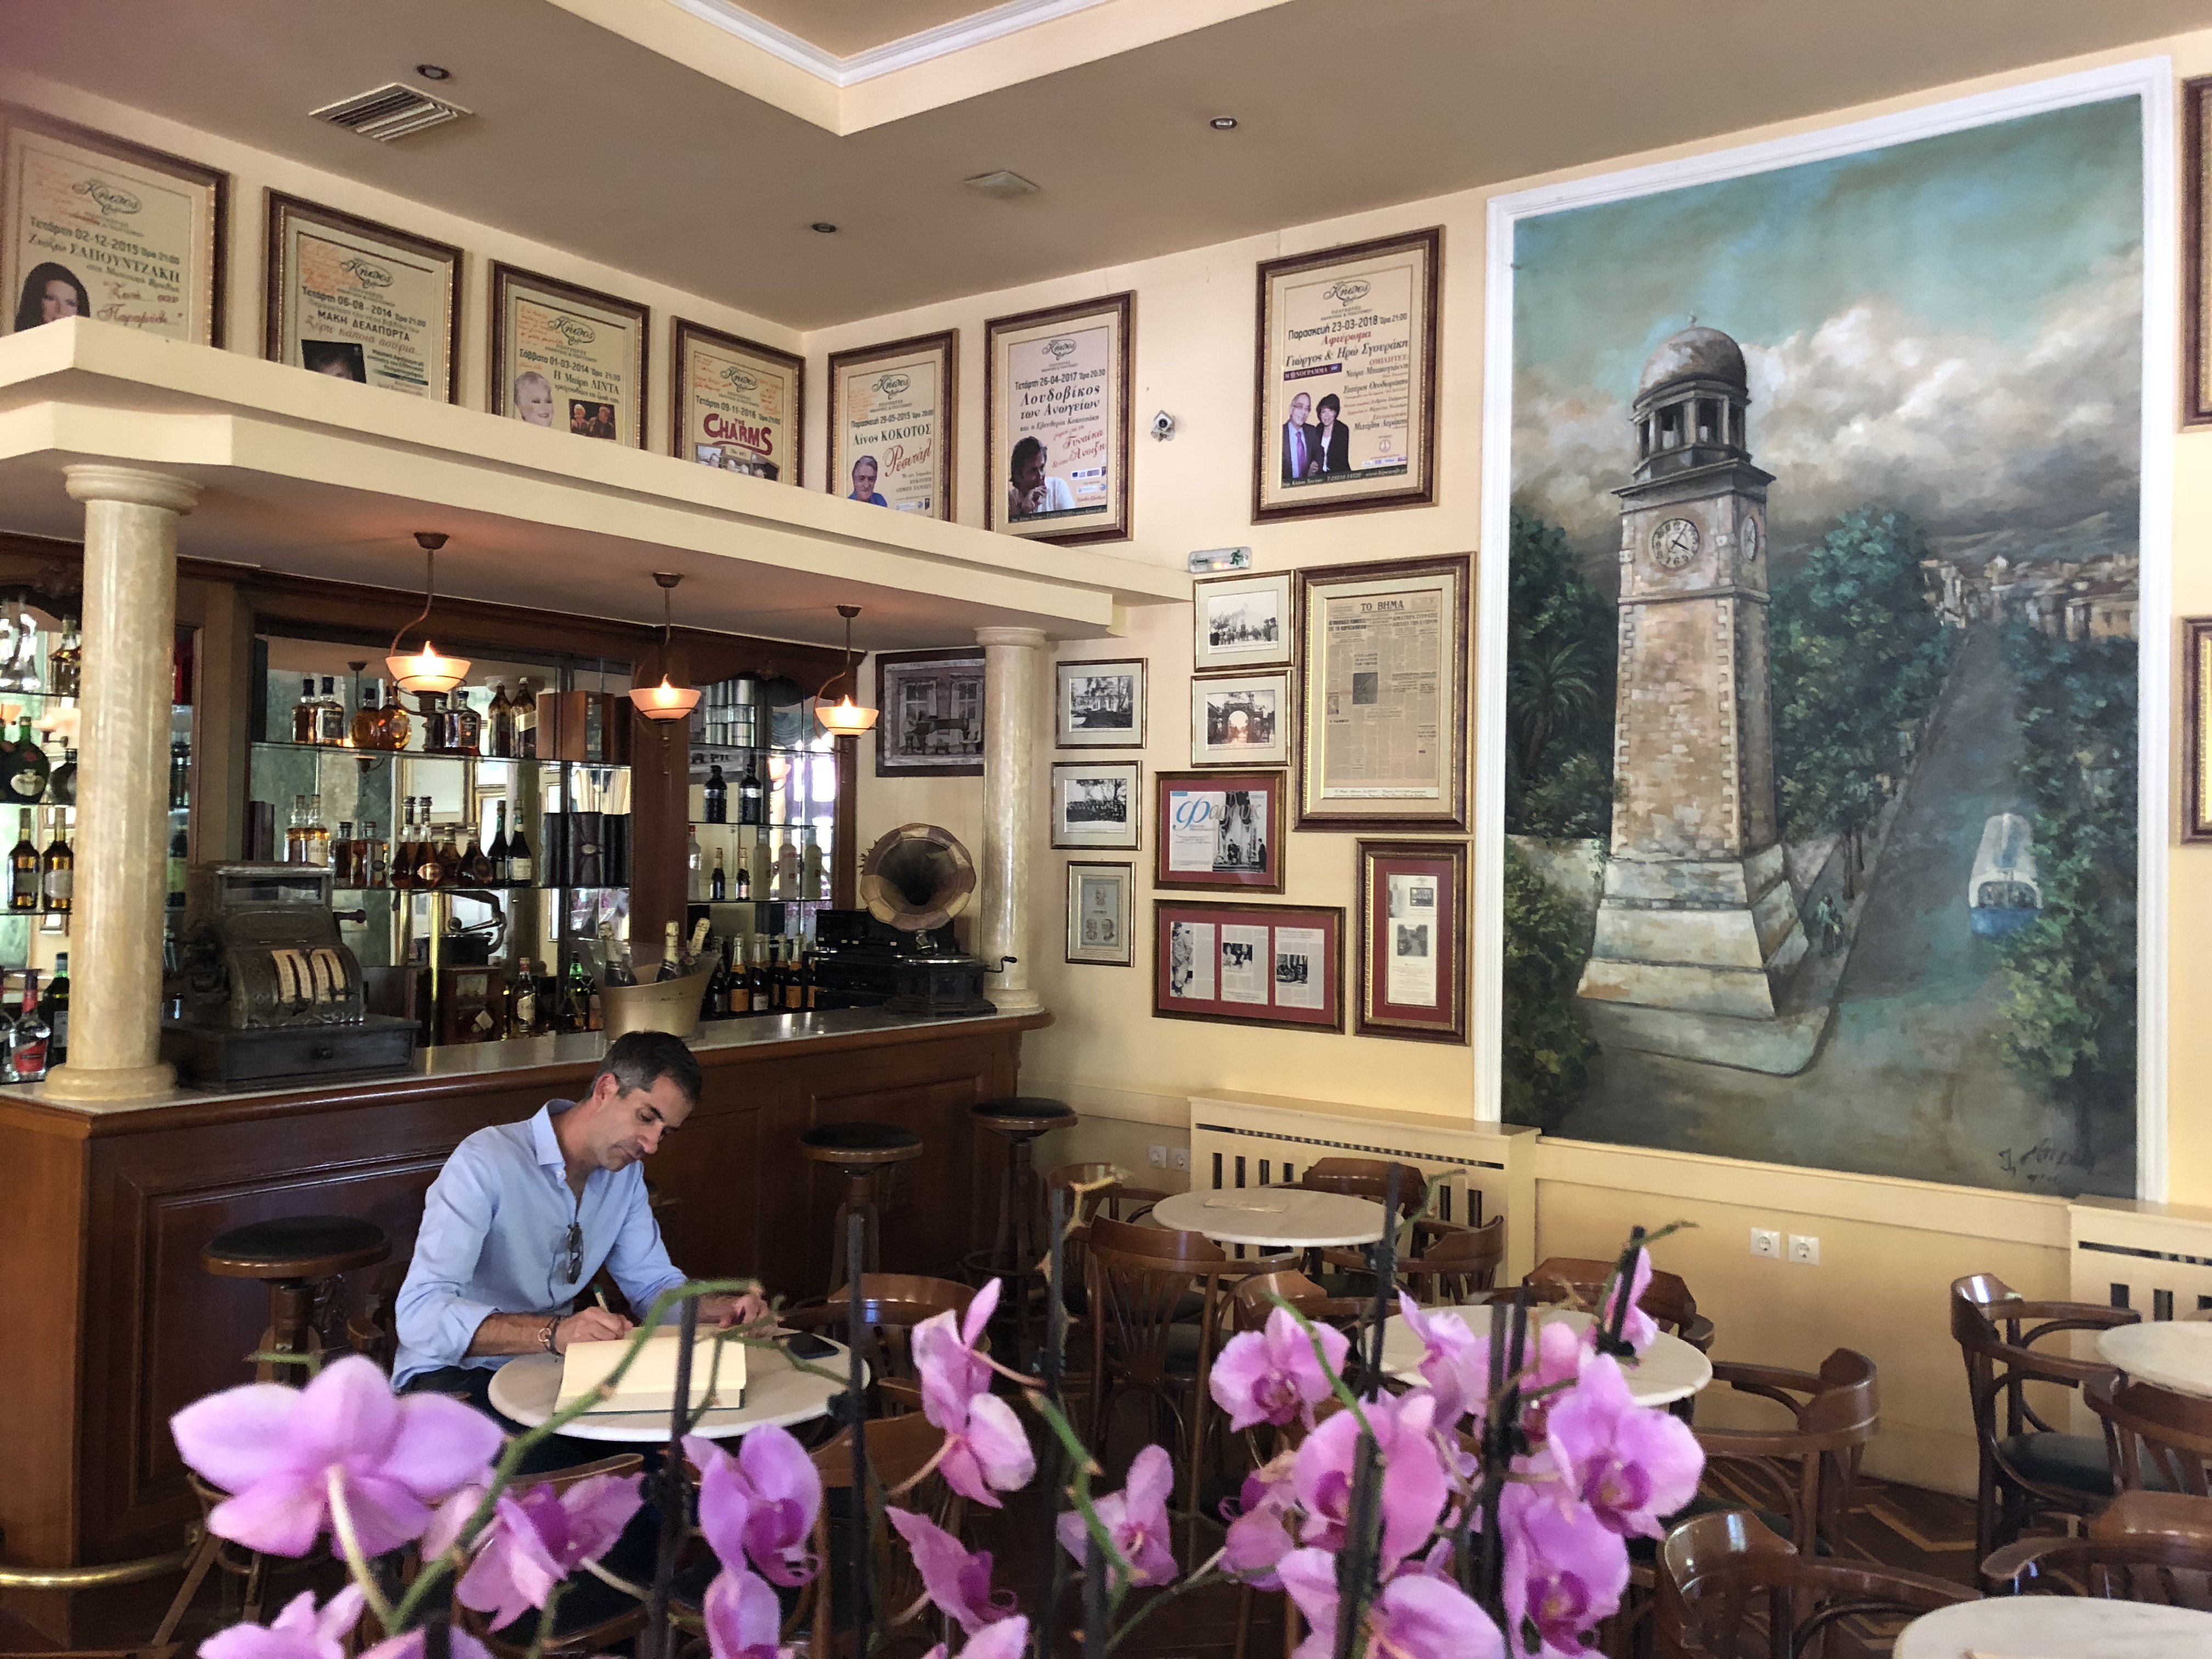 Το Ιστορικό Καφέ “Κήπος” επισκέφθηκε ο νεοεκλεγείς Δήμαρχος Αθηναίων Κώστας Μπακογιάννης